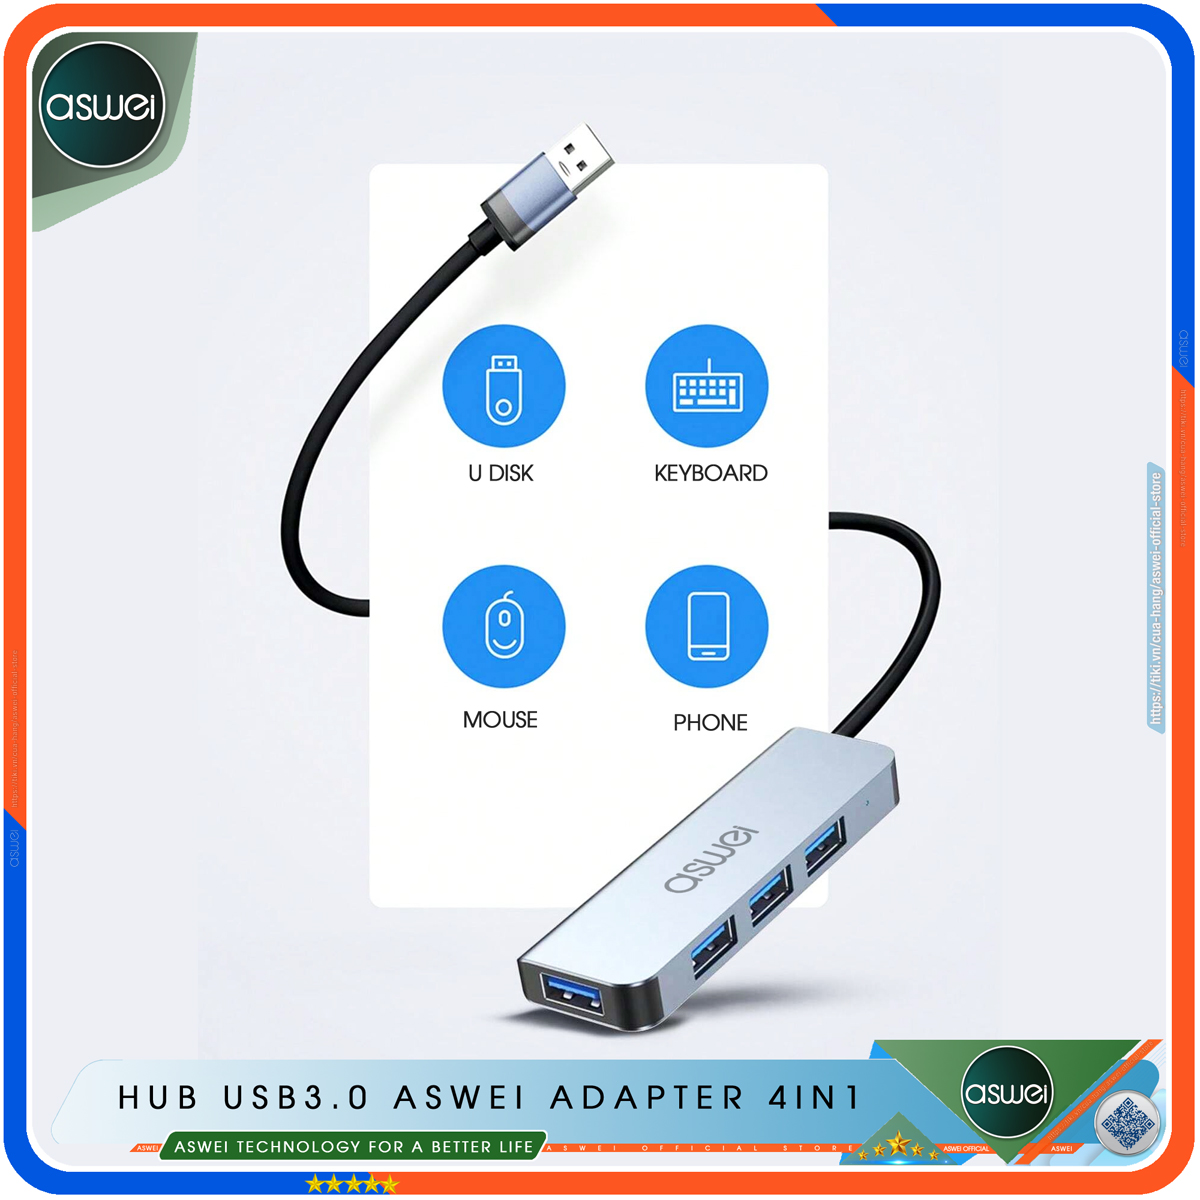 Hub USB 3.0 Và Hub Type C ASWEI 4in1 To USB 3.0 - Cổng Chia, ổ Chia USB Tốc Độ Cao - Hub Chuyển Đổi USB Type-C Dành Cho Macbook, Laptop, PC, Máy Tính Bảng, Điện Thoại - Hàng Chính Hãng